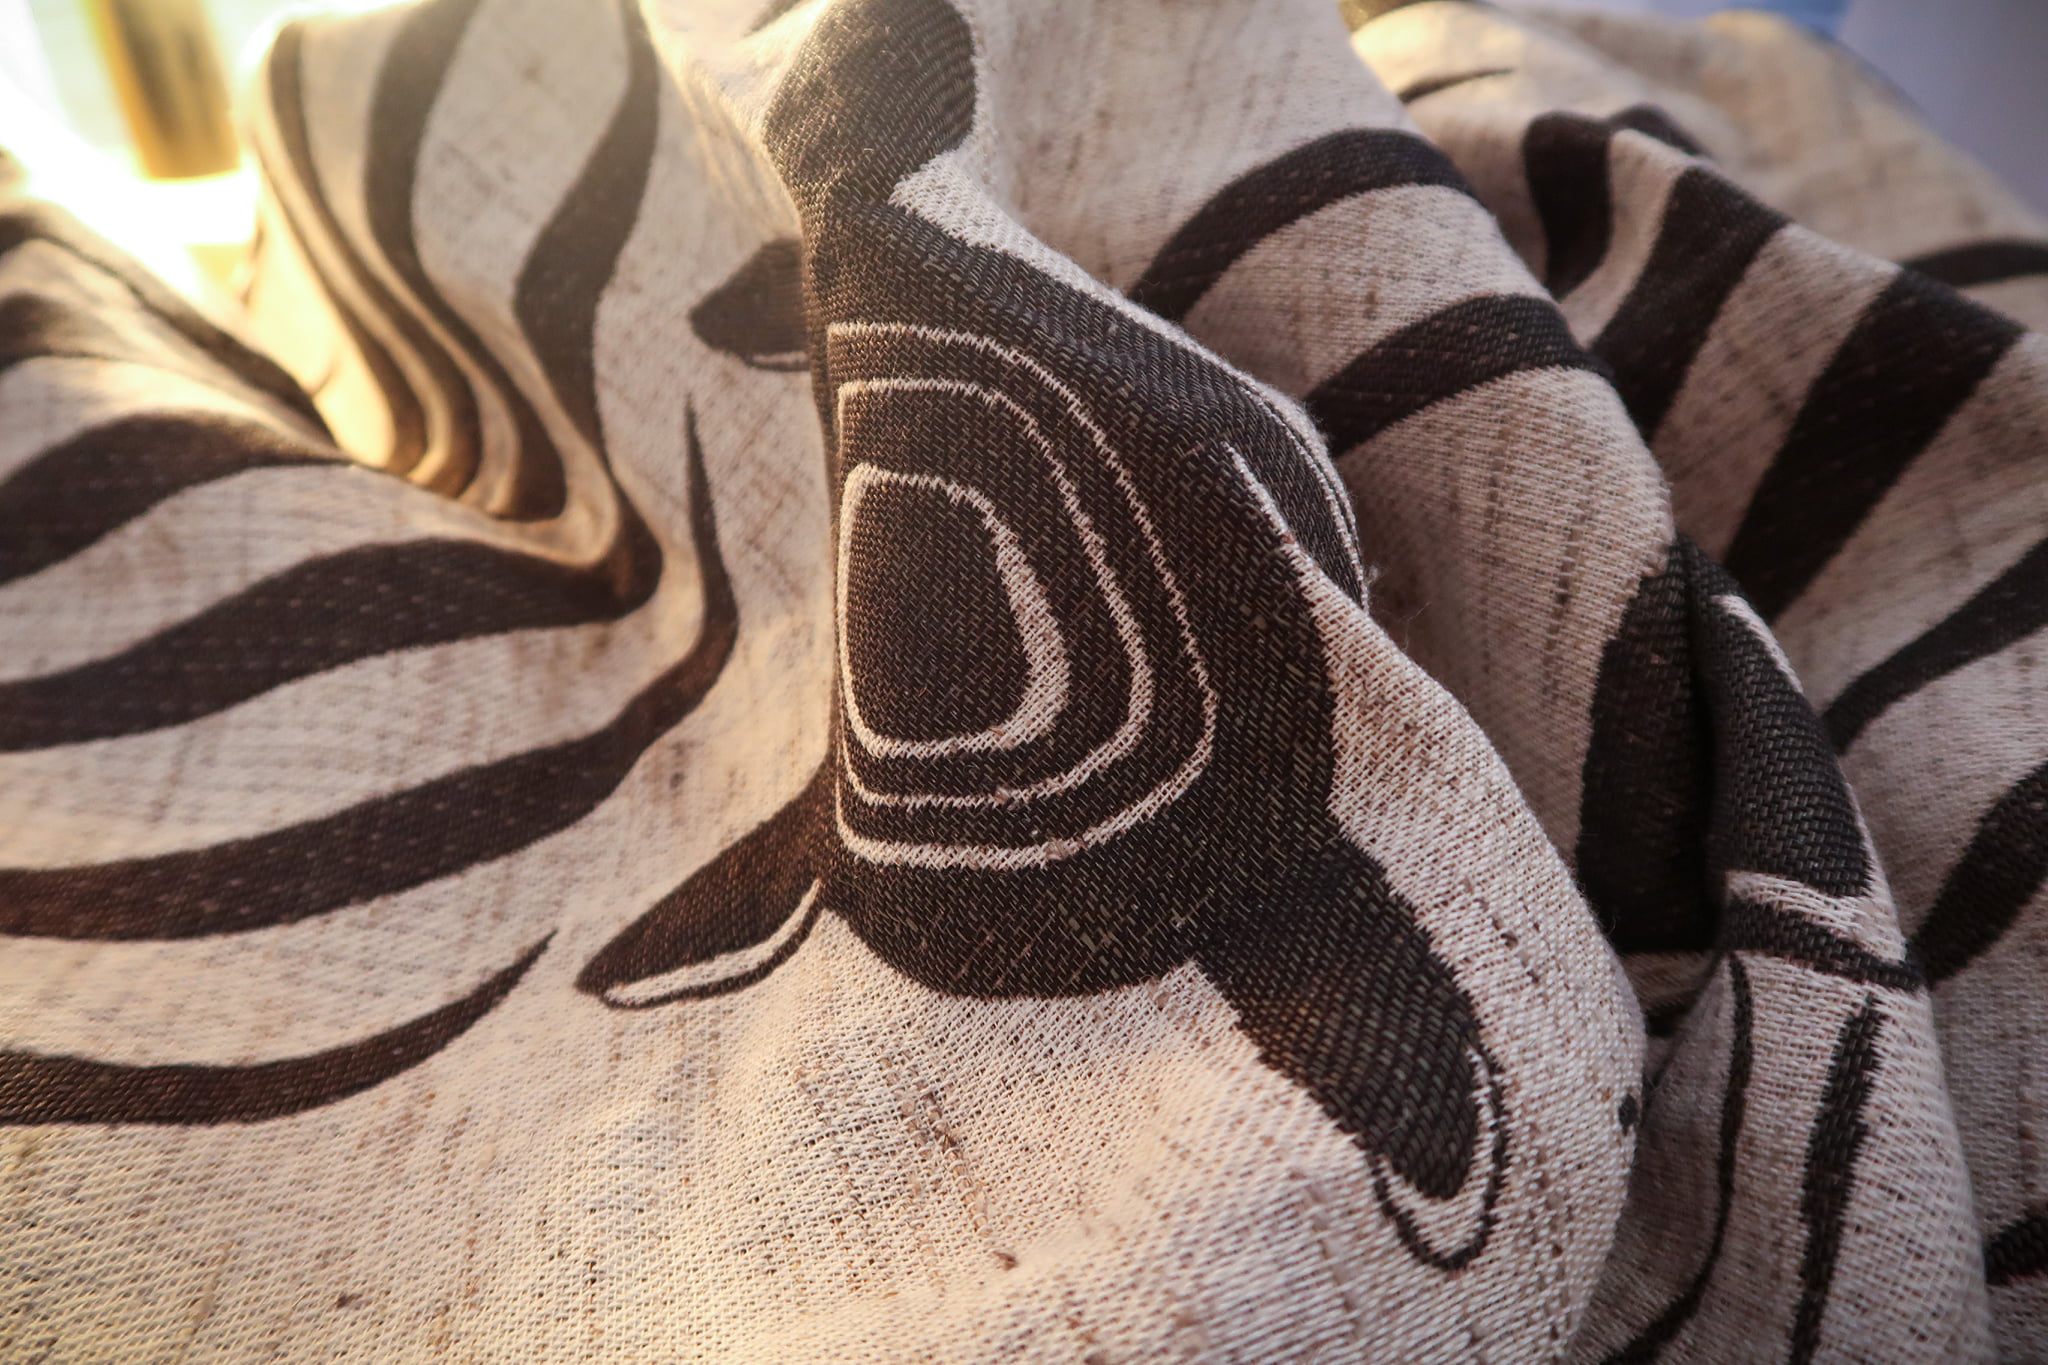 Maison235 Moby Doek Komodo Wrap (linen, wool, silk) Image